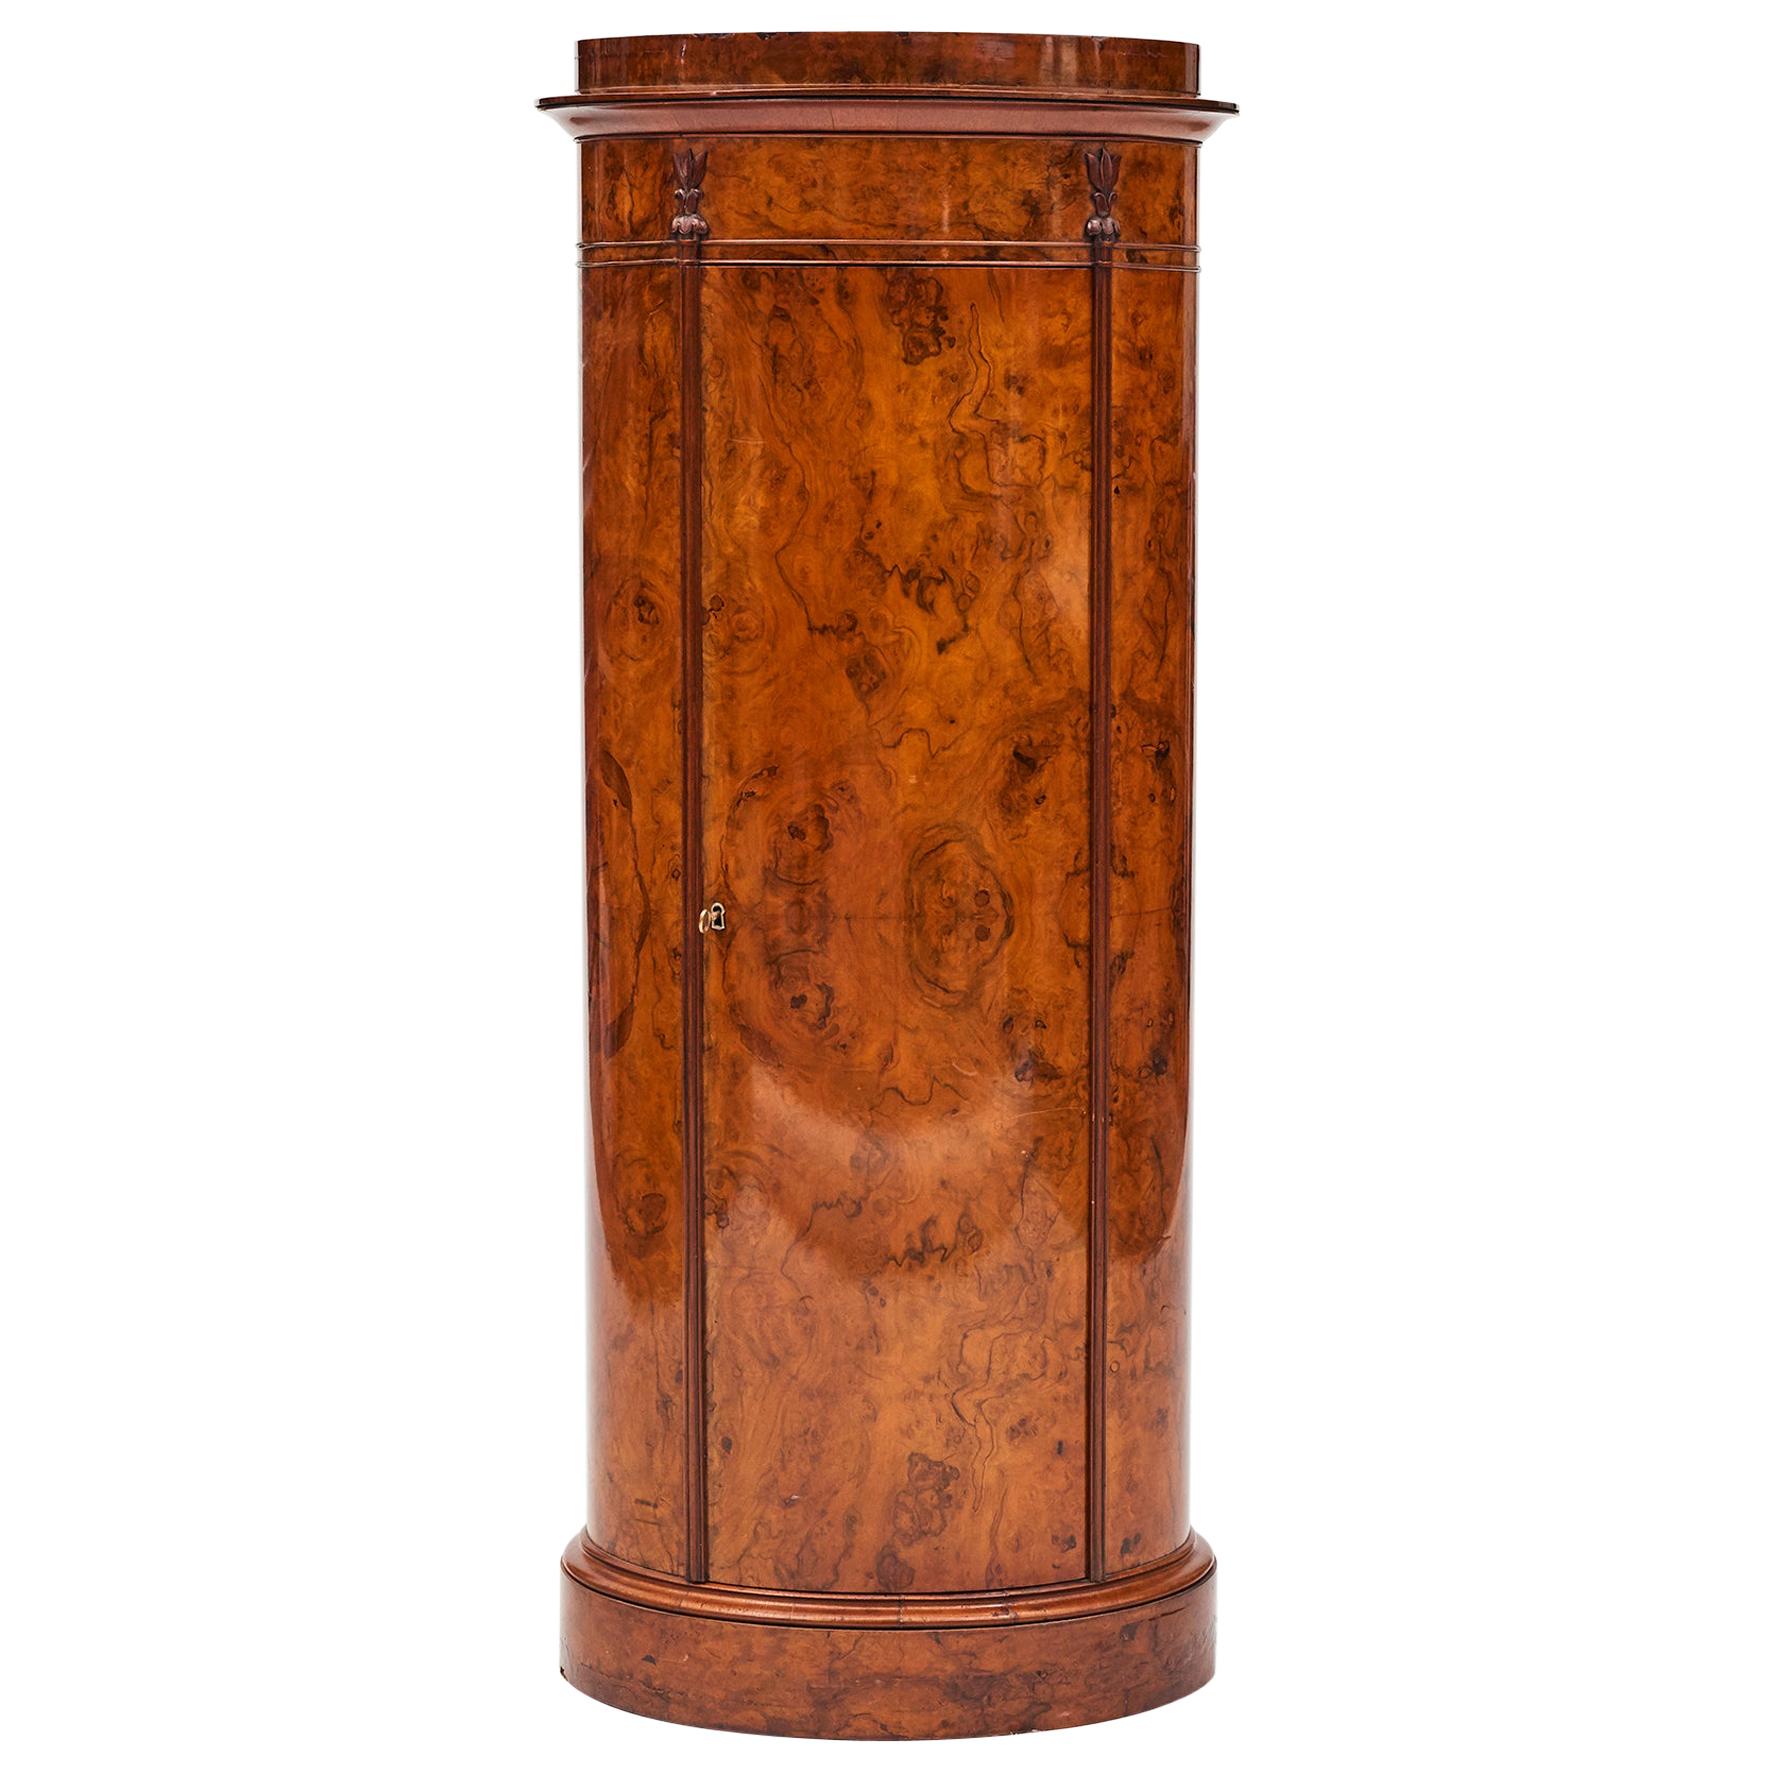 Cylinder Burl Walnut Pedestal Cabinet, Copenhagen, 1830-1840